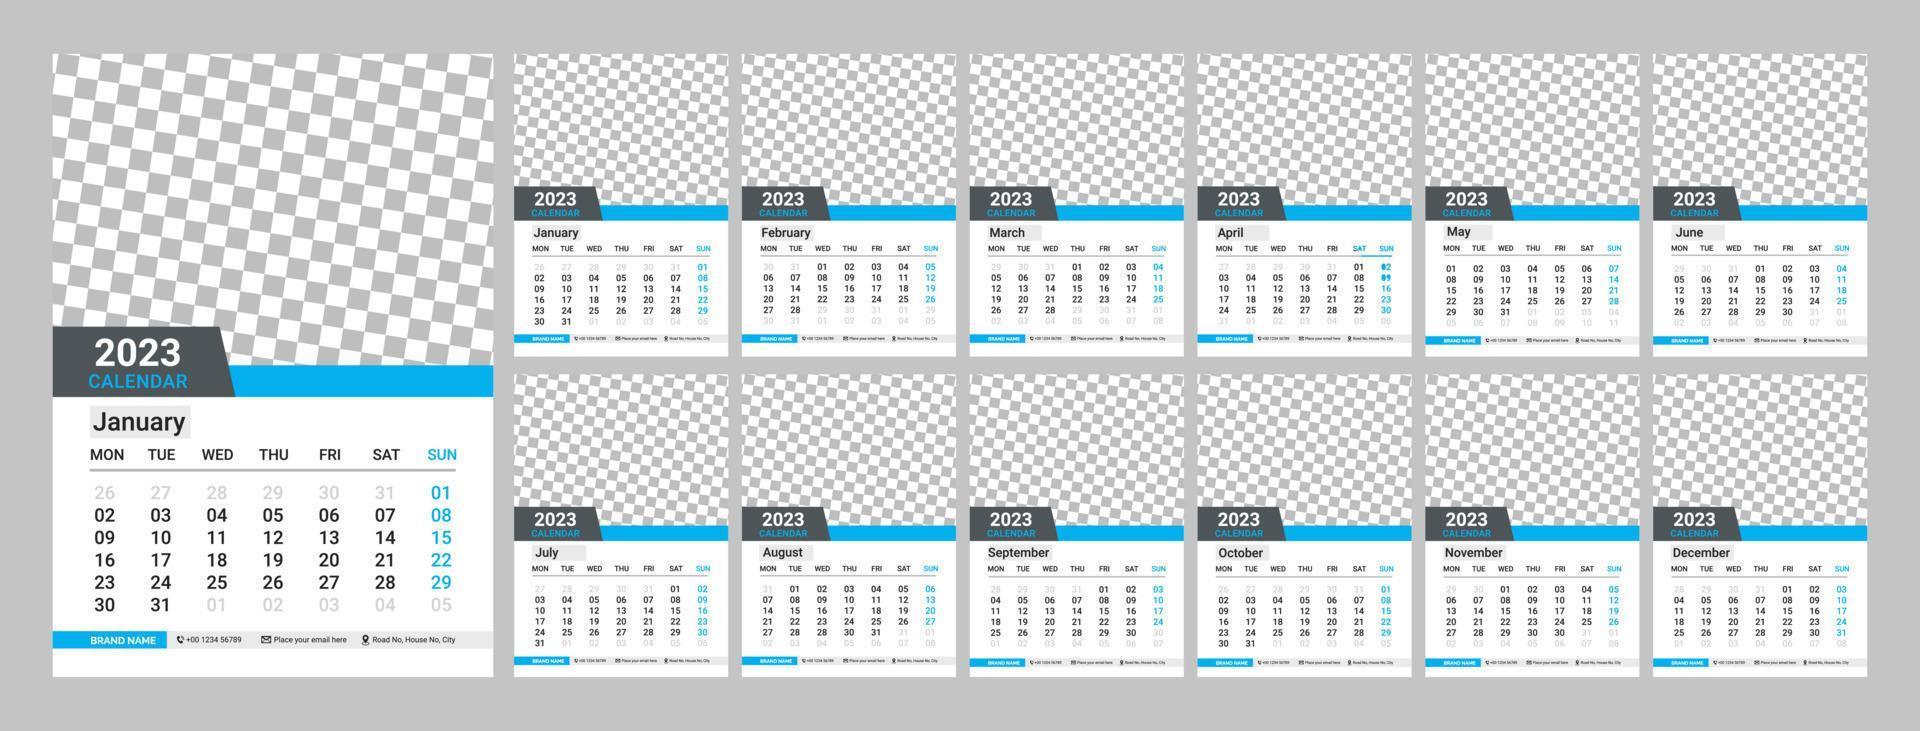 calendrier mural desing 2023. calendrier mensuel 2023. 12 mois. modèle de page de calendrier modifiable vecteur